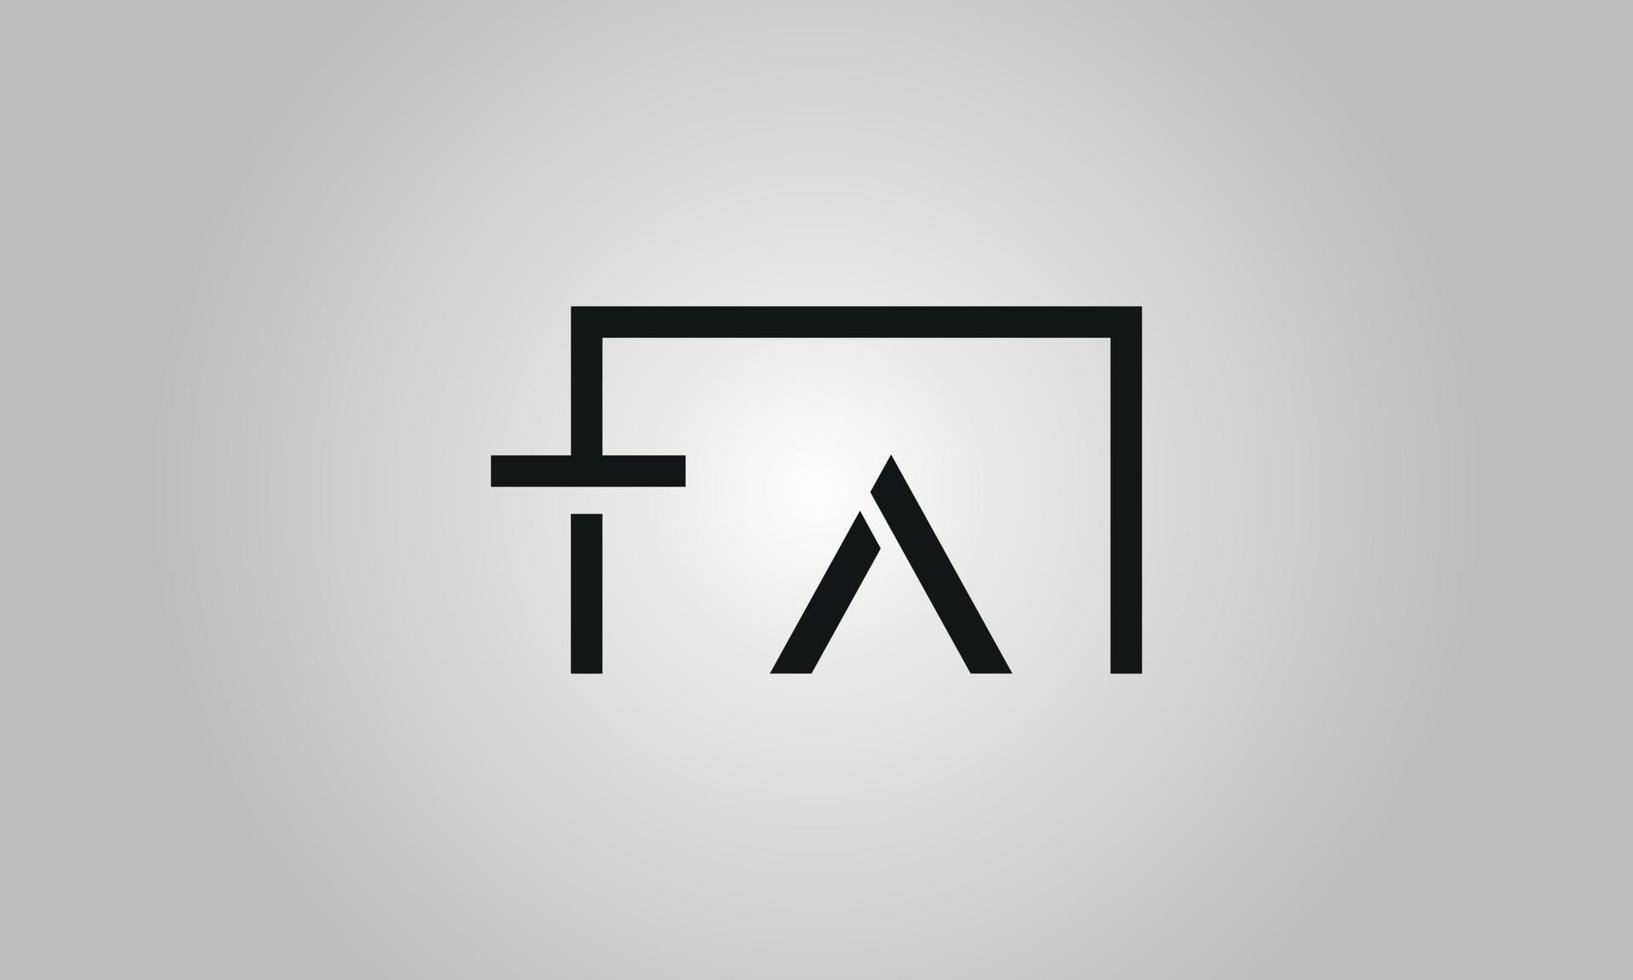 Buchstabe ta-Logo-Design. ta-Logo mit quadratischer Form in schwarzen Farben Vektor kostenlose Vektorvorlage.